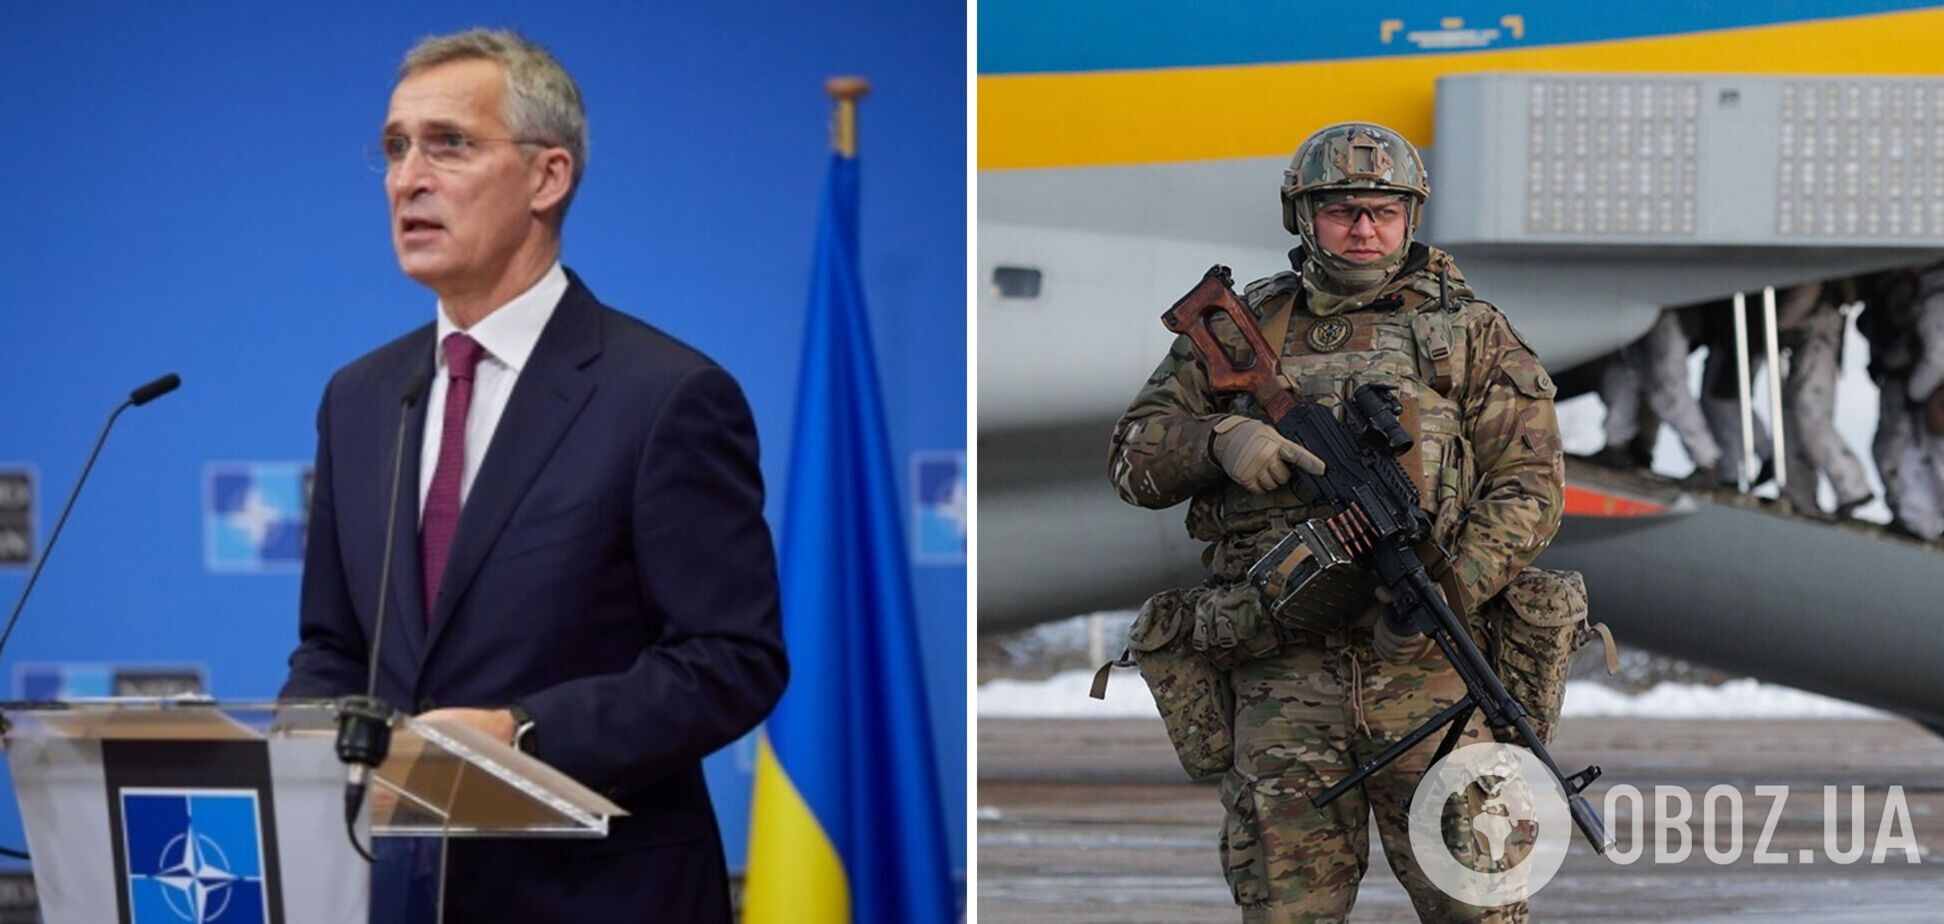 'Ми не відступимо': Столтенберг на саміті в Бухаресті закликав країни НАТО посилити підтримку України 